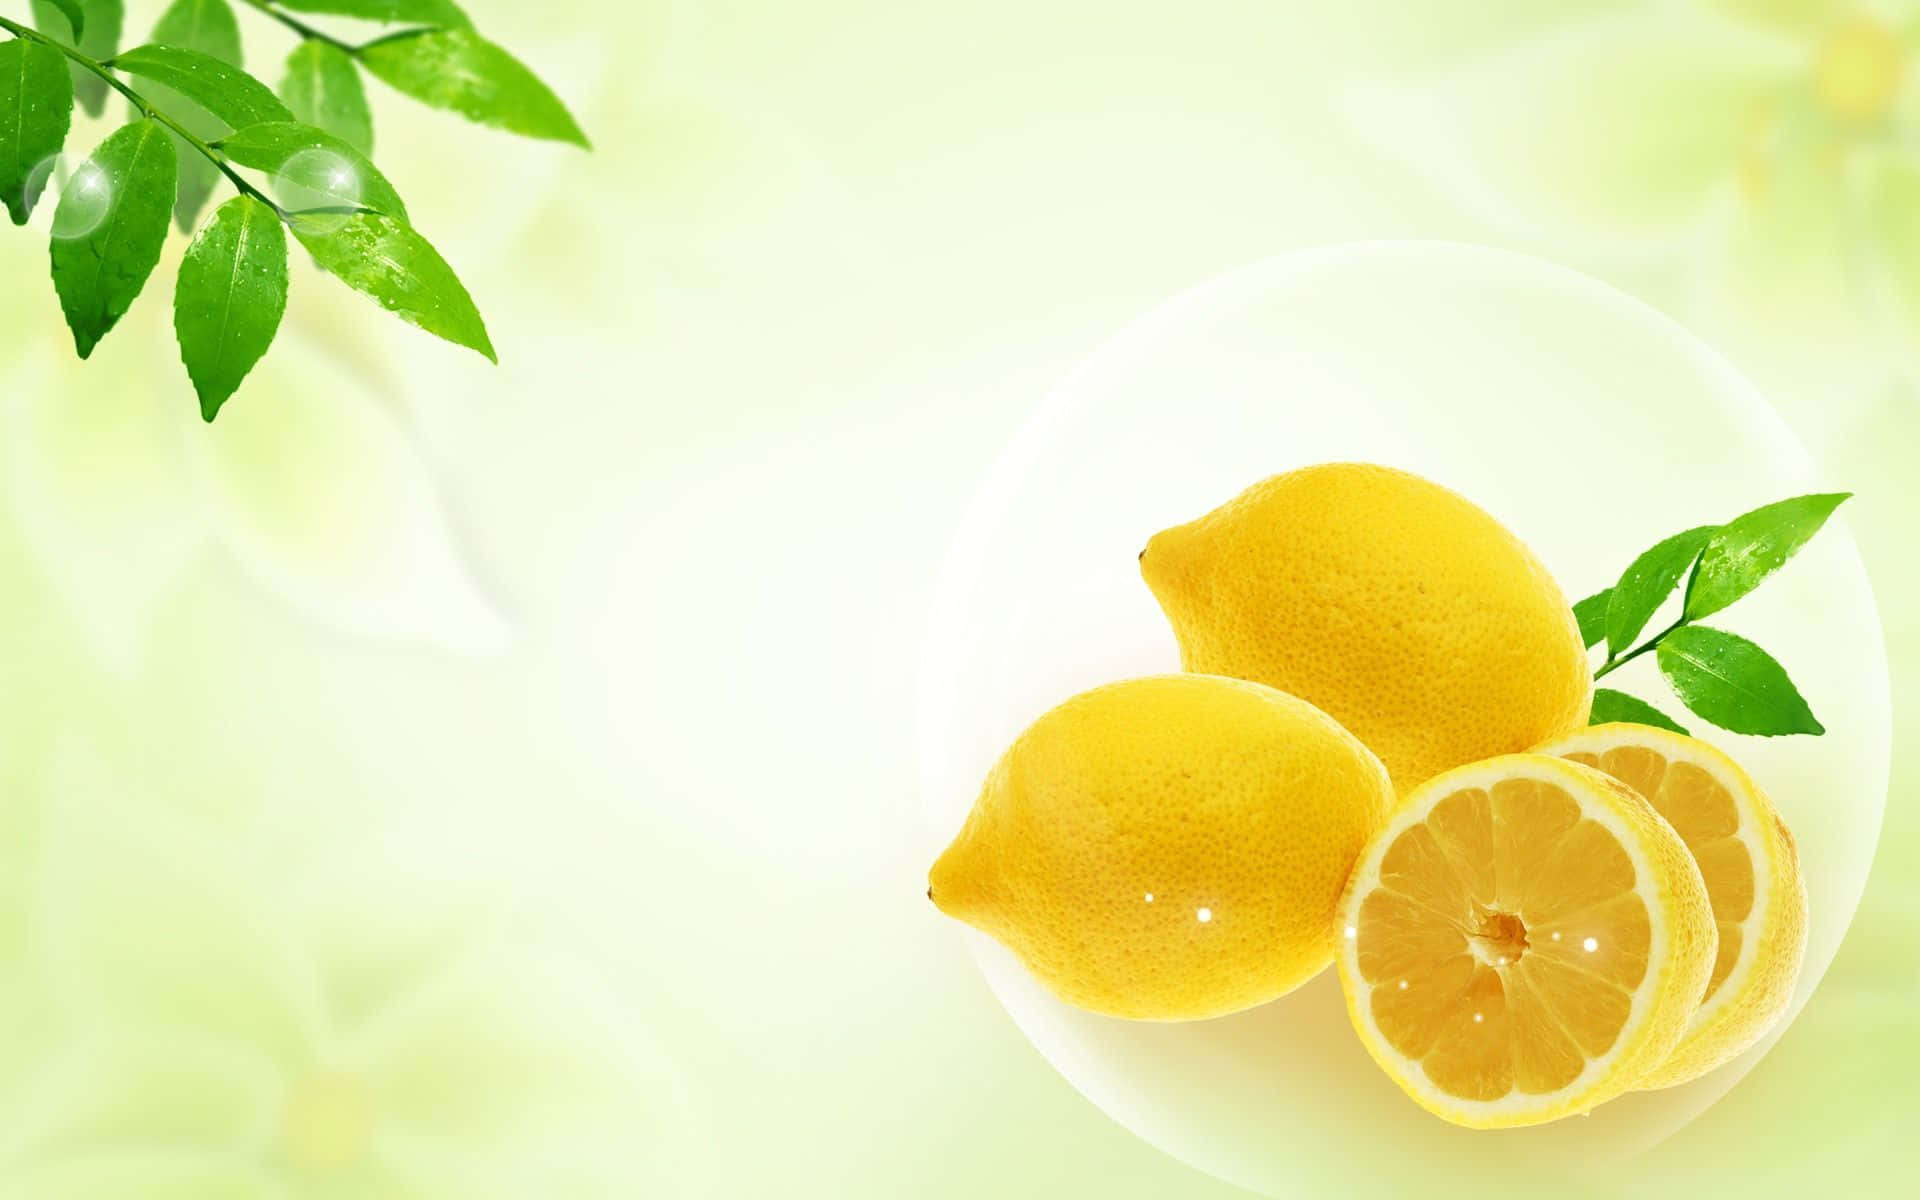 Aesthetic Lemon On Bowl Wallpaper